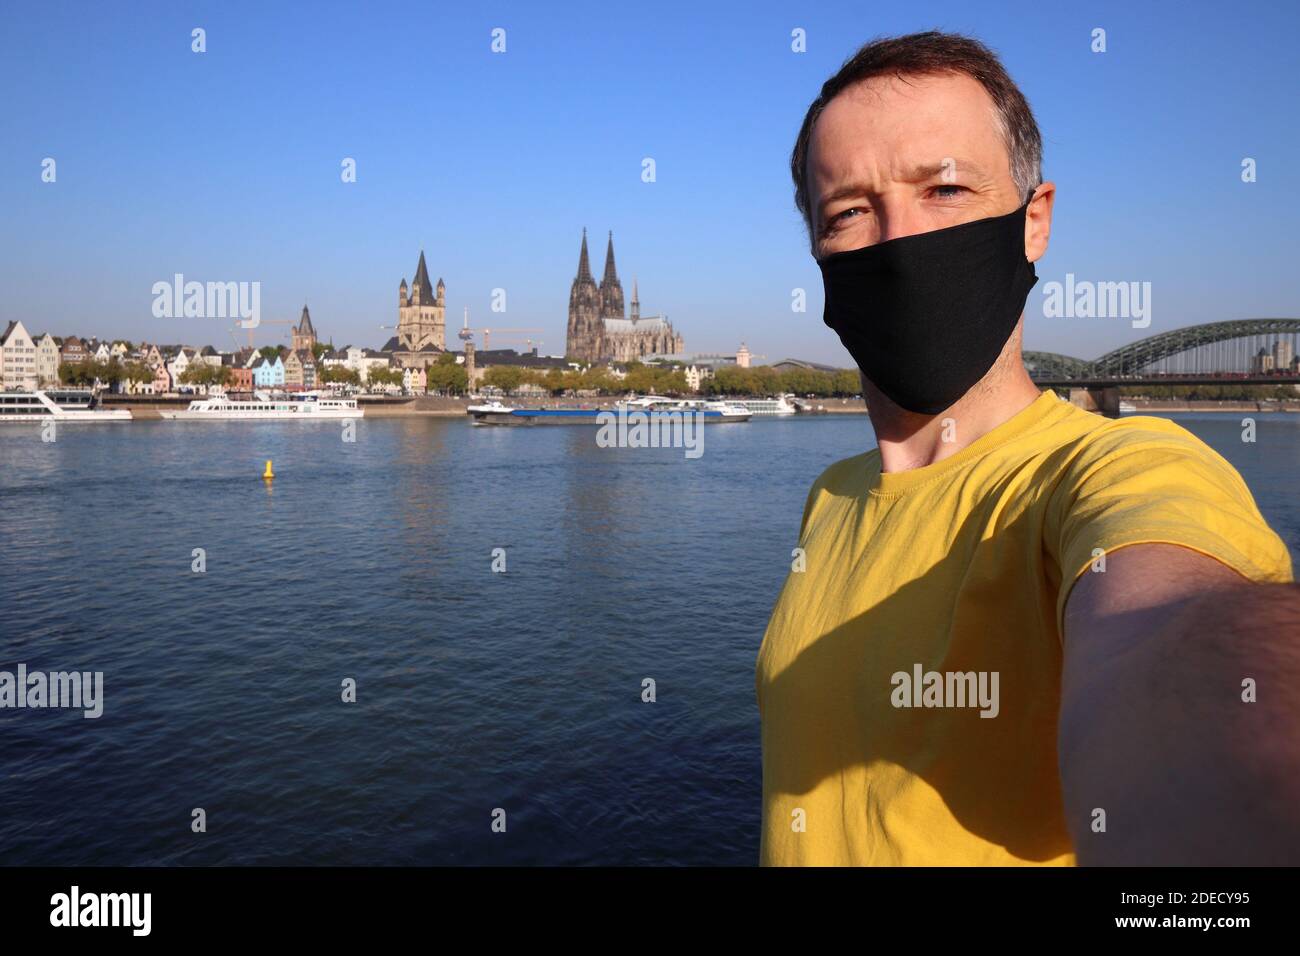 Selfie turistico con maschera facciale a Colonia città, Germania. Selfie dei viaggiatori con lo skyline di Colonia. Foto Stock